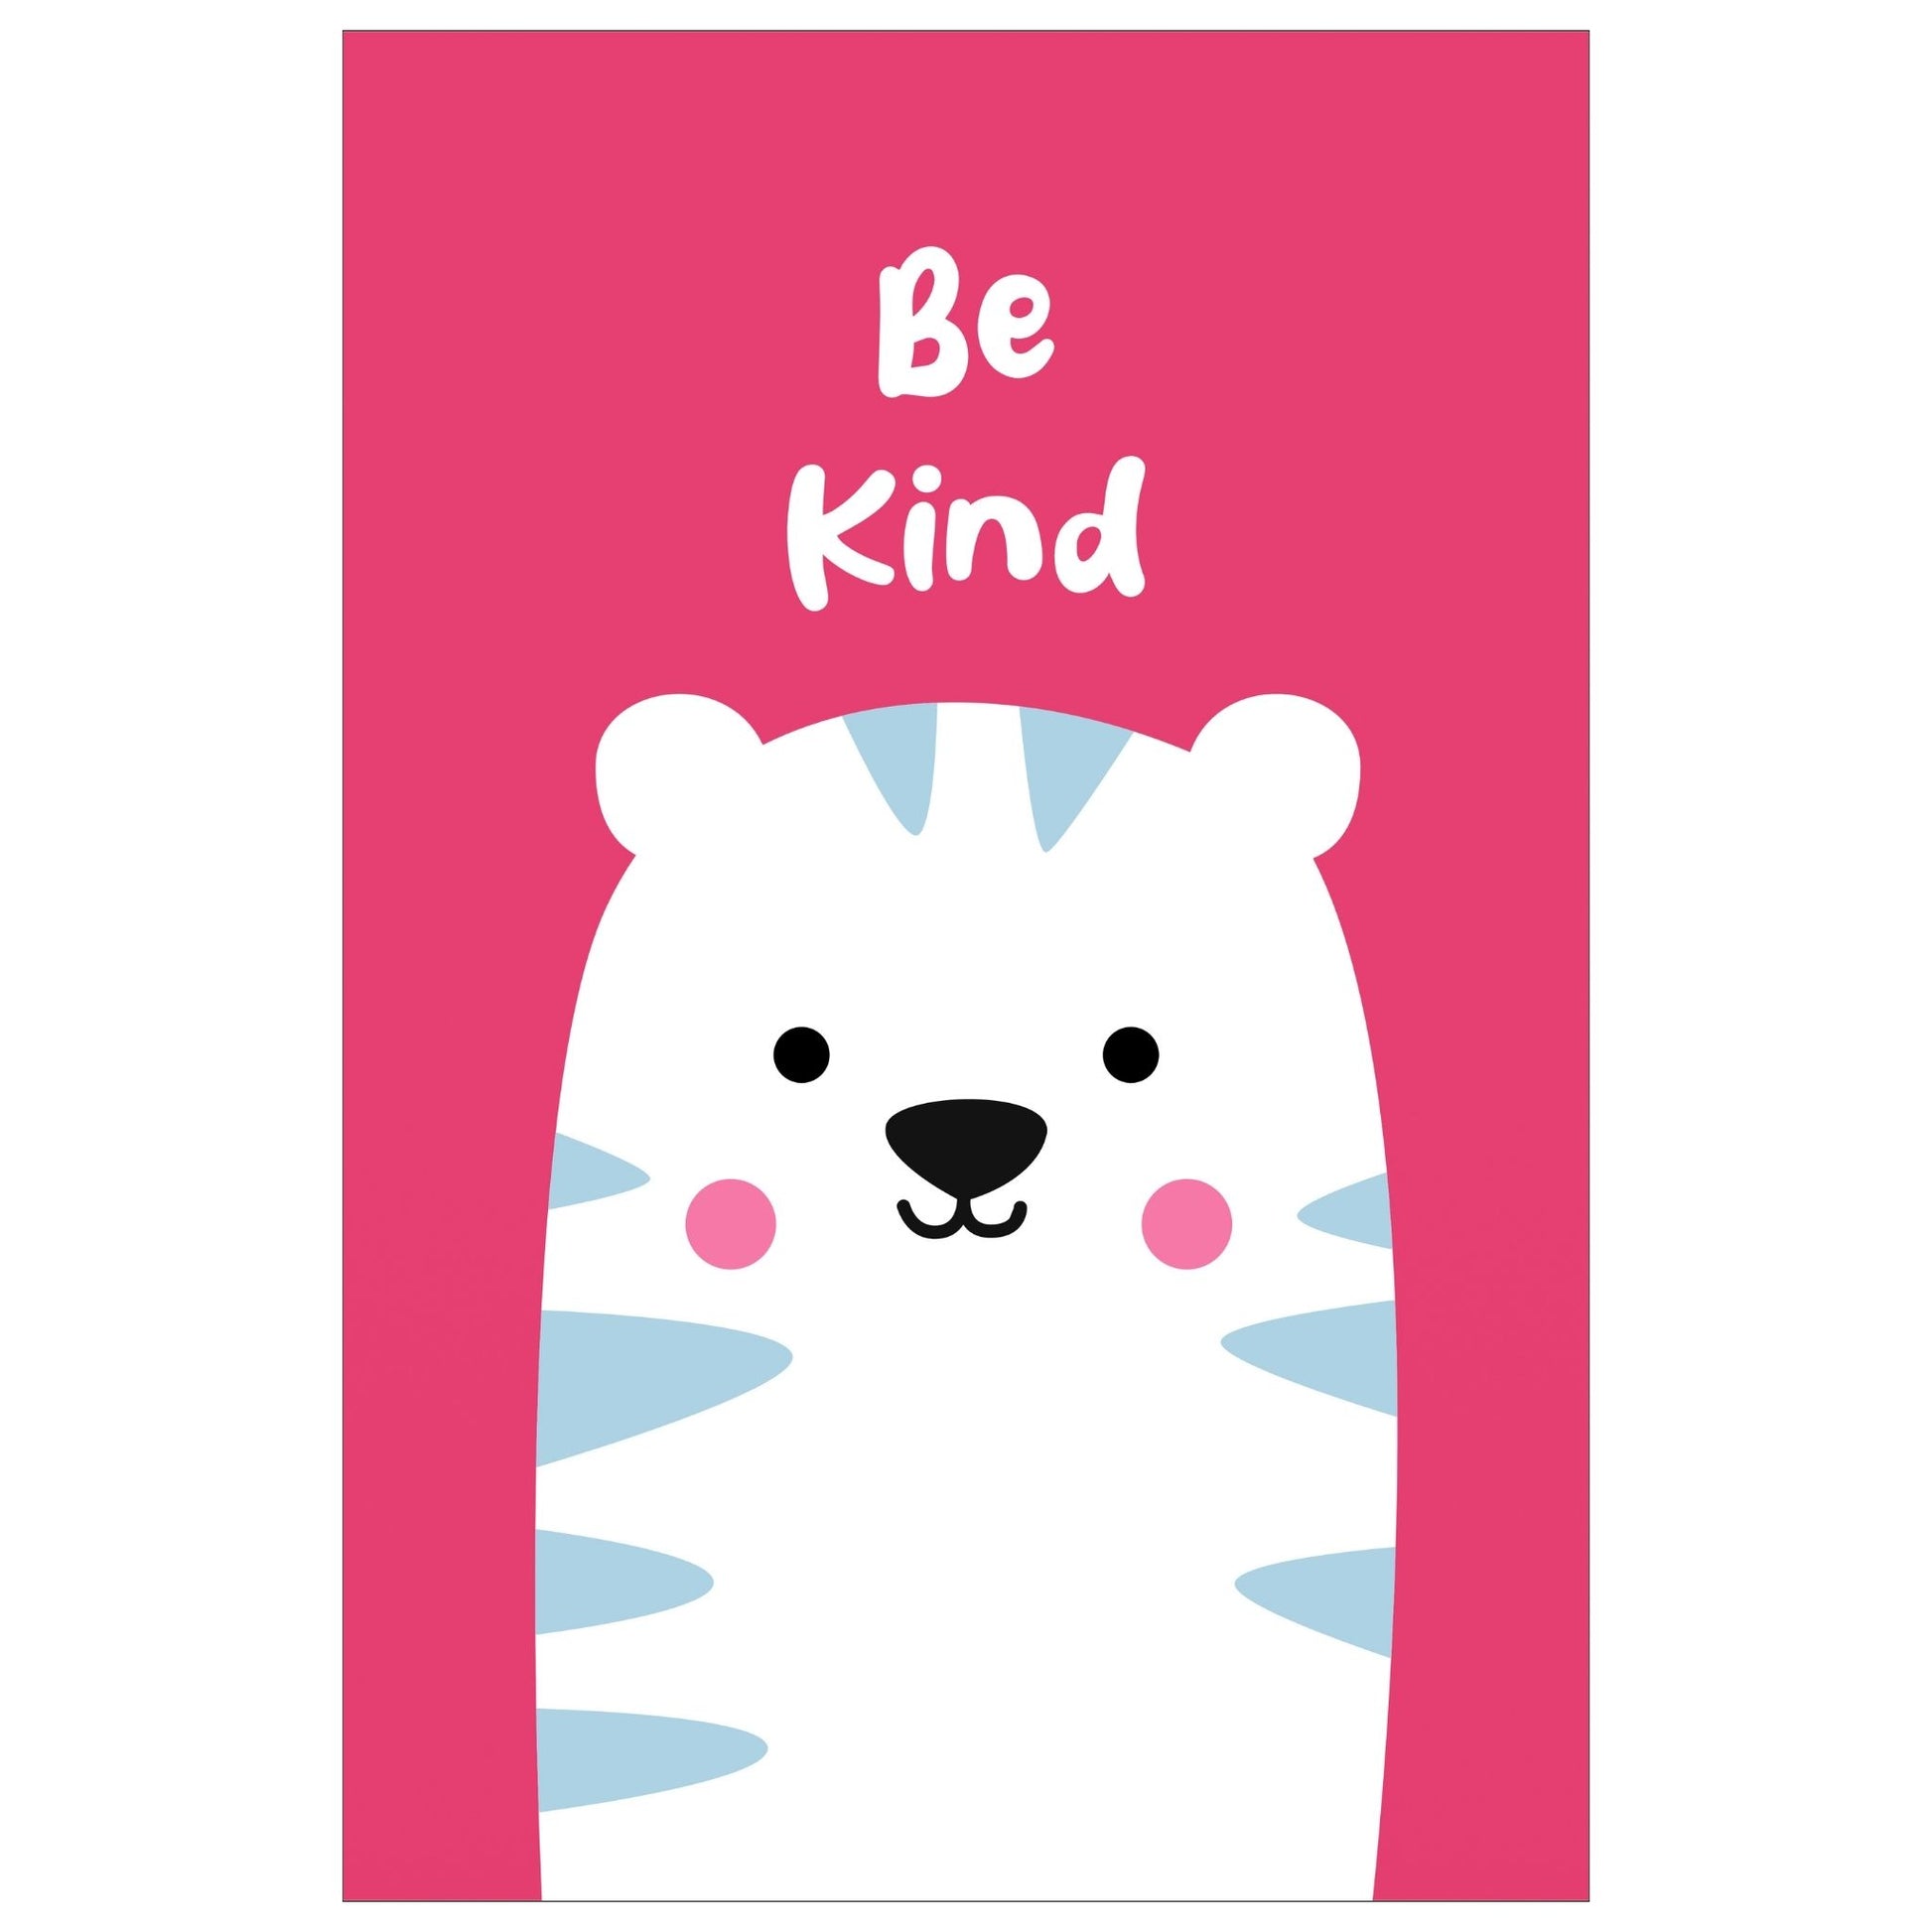 Cartoon Animal. Grafisk plakat for barnerommet. Hvit ttiger på cerise bakgrunn. Tekst "Be kind".